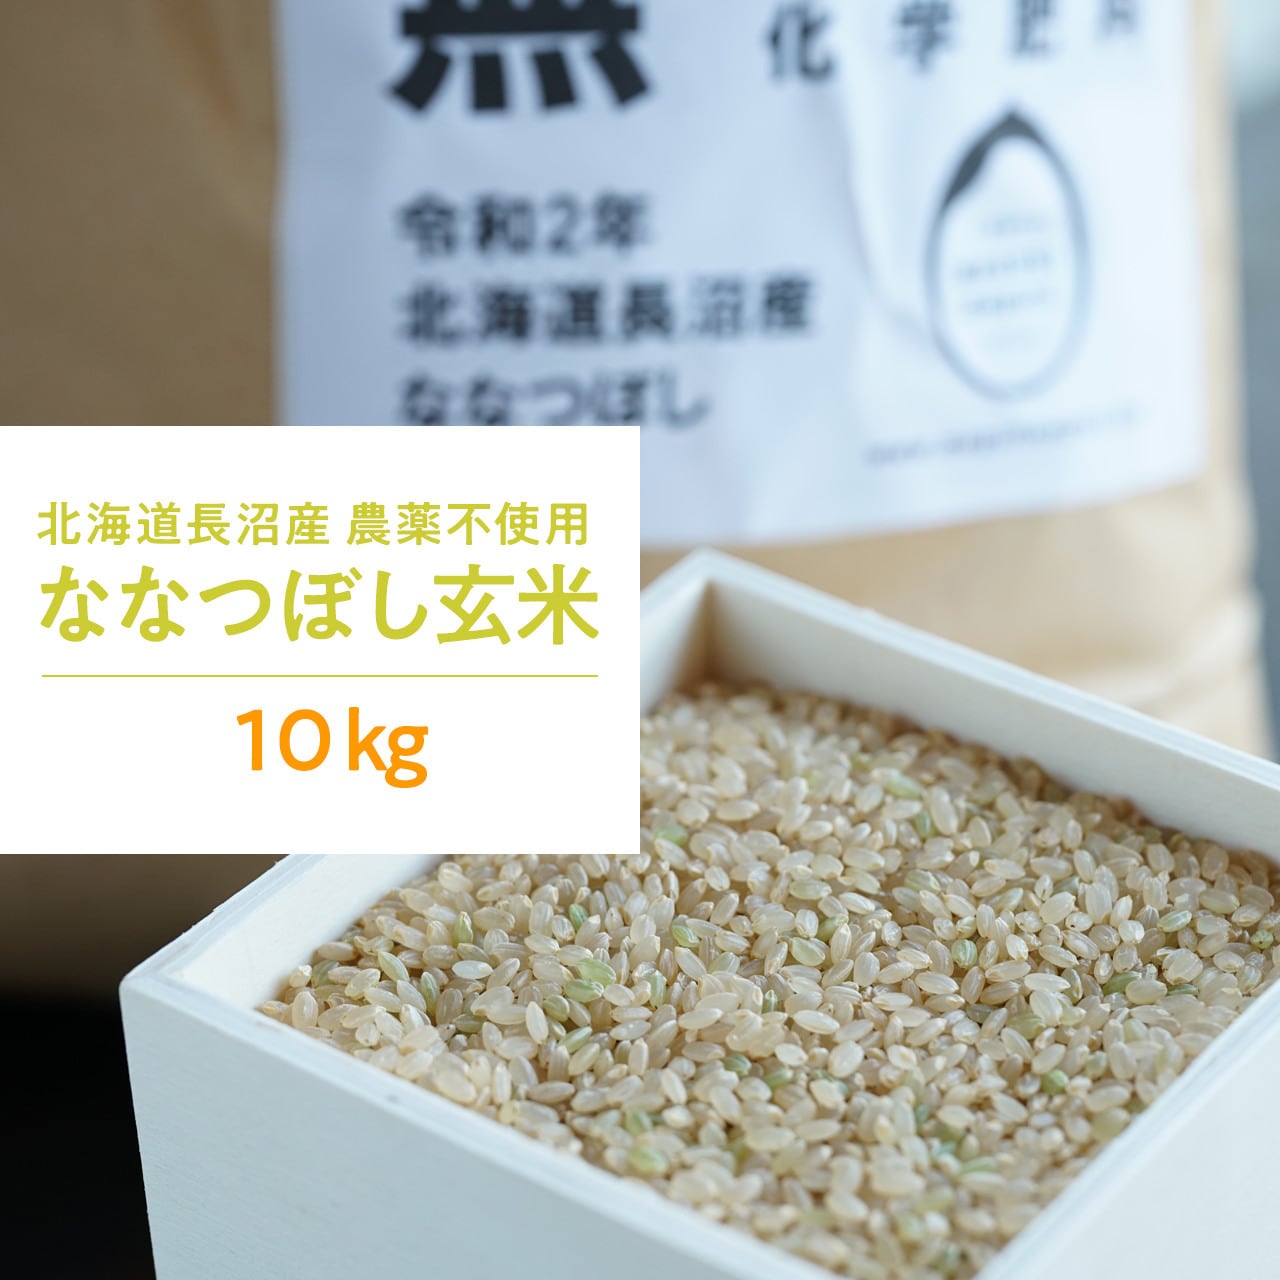 健康第一⭐完全無農薬⭐無化学肥料 ななつぼし玄米10㌔